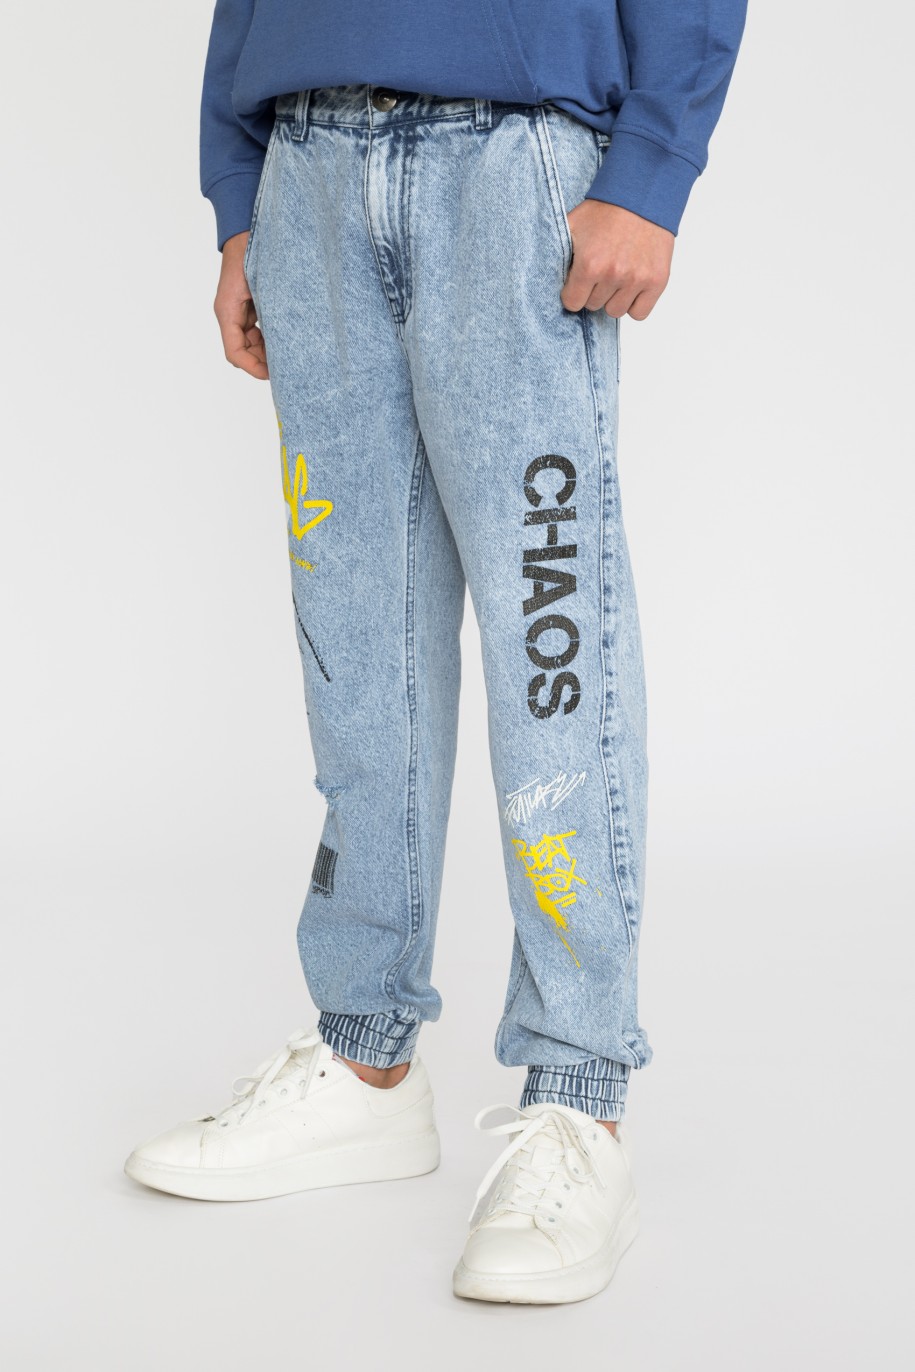 Niebieskie jeansy typu jogger z nadrukami dla chłopaka - 33454